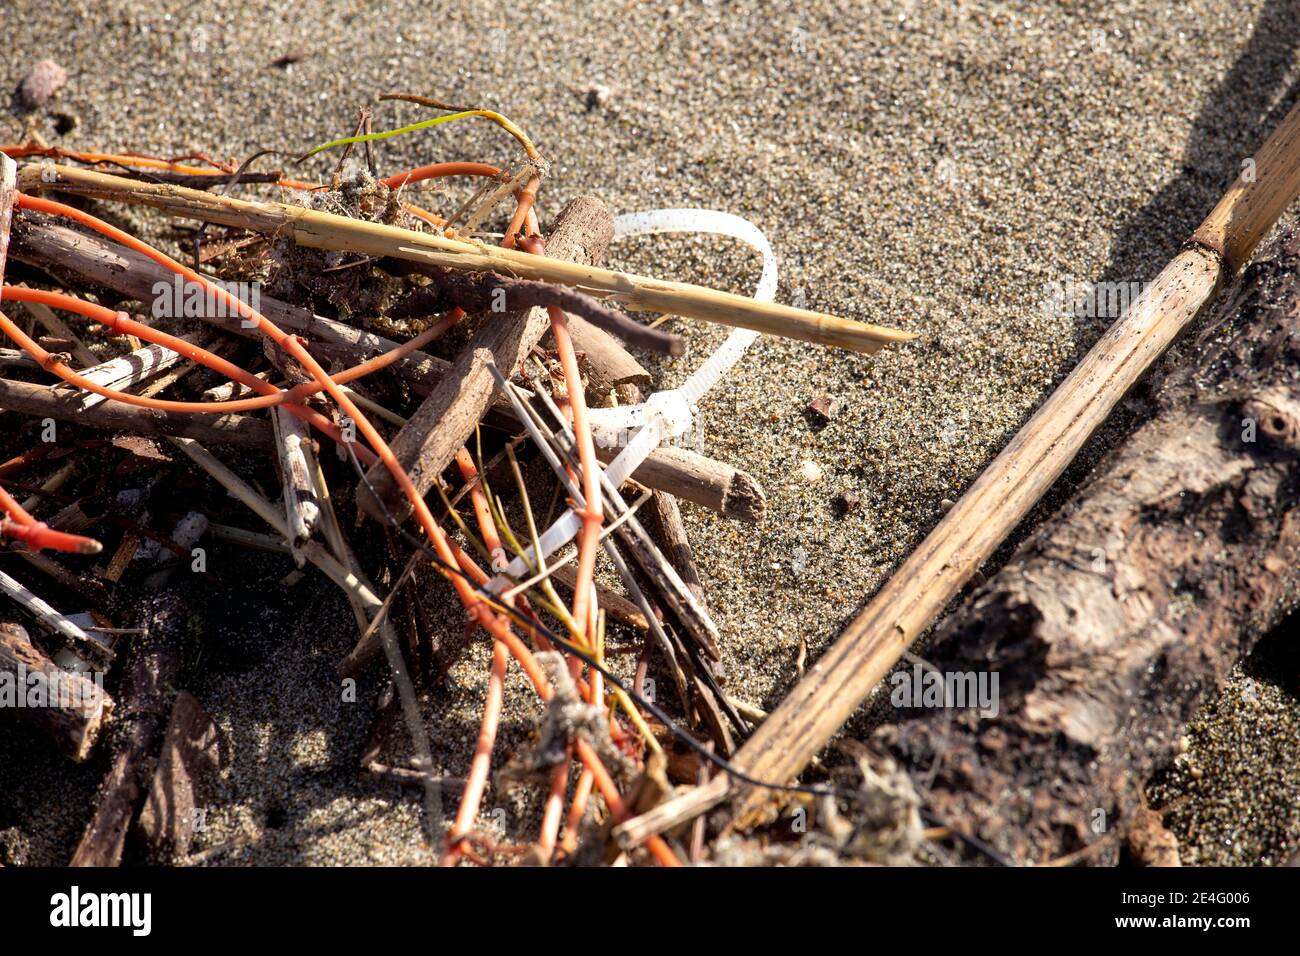 Plastica inquirinante riversata sul litorale dopo ogni mareggiata Foto de stock